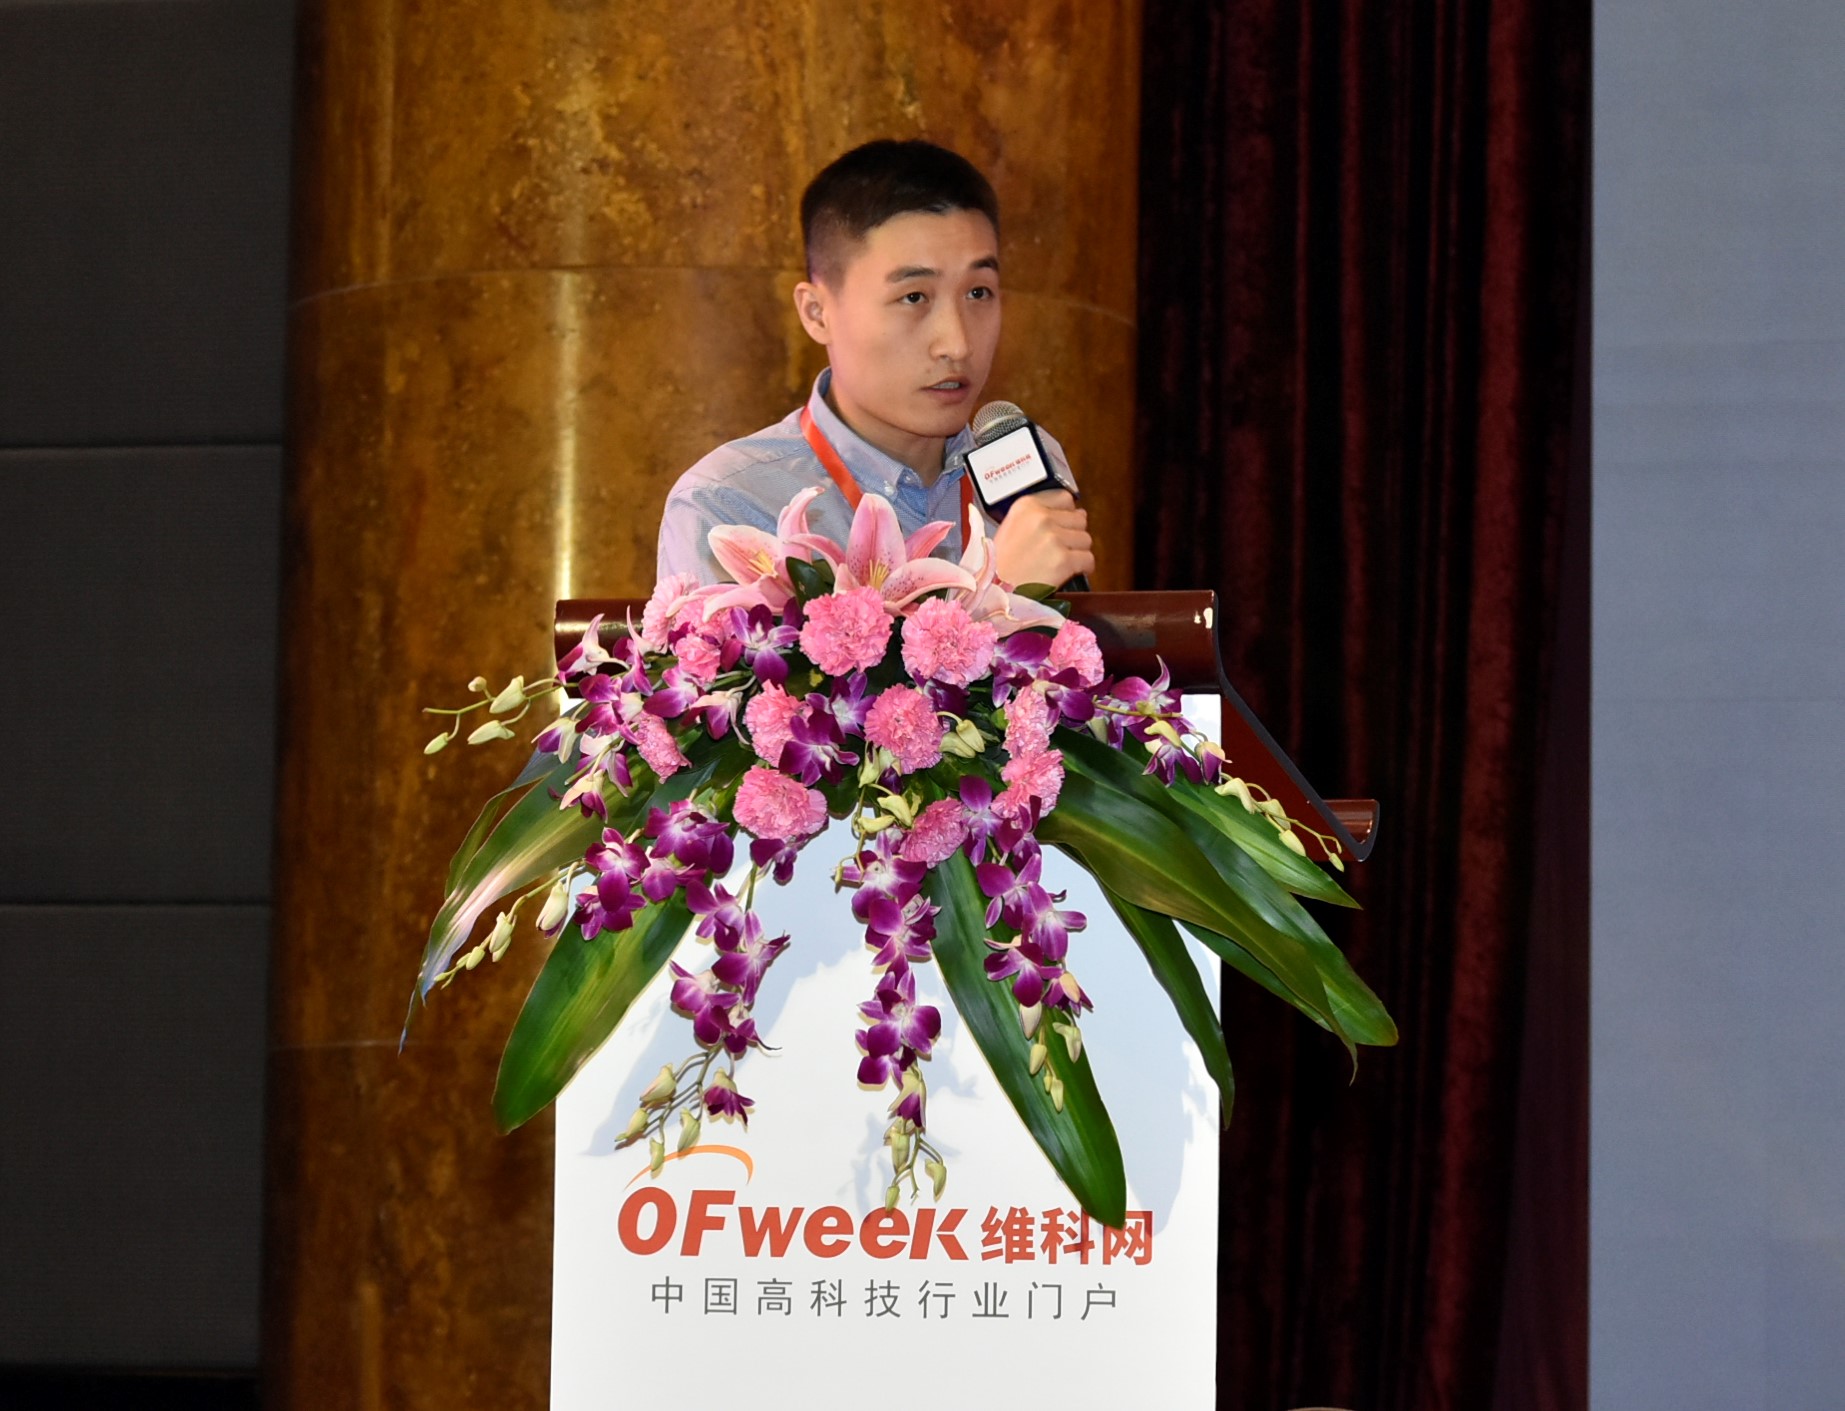 OFweek 2018（第三屆）中國人工智慧產業大會精彩不止，明日盛宴再續！